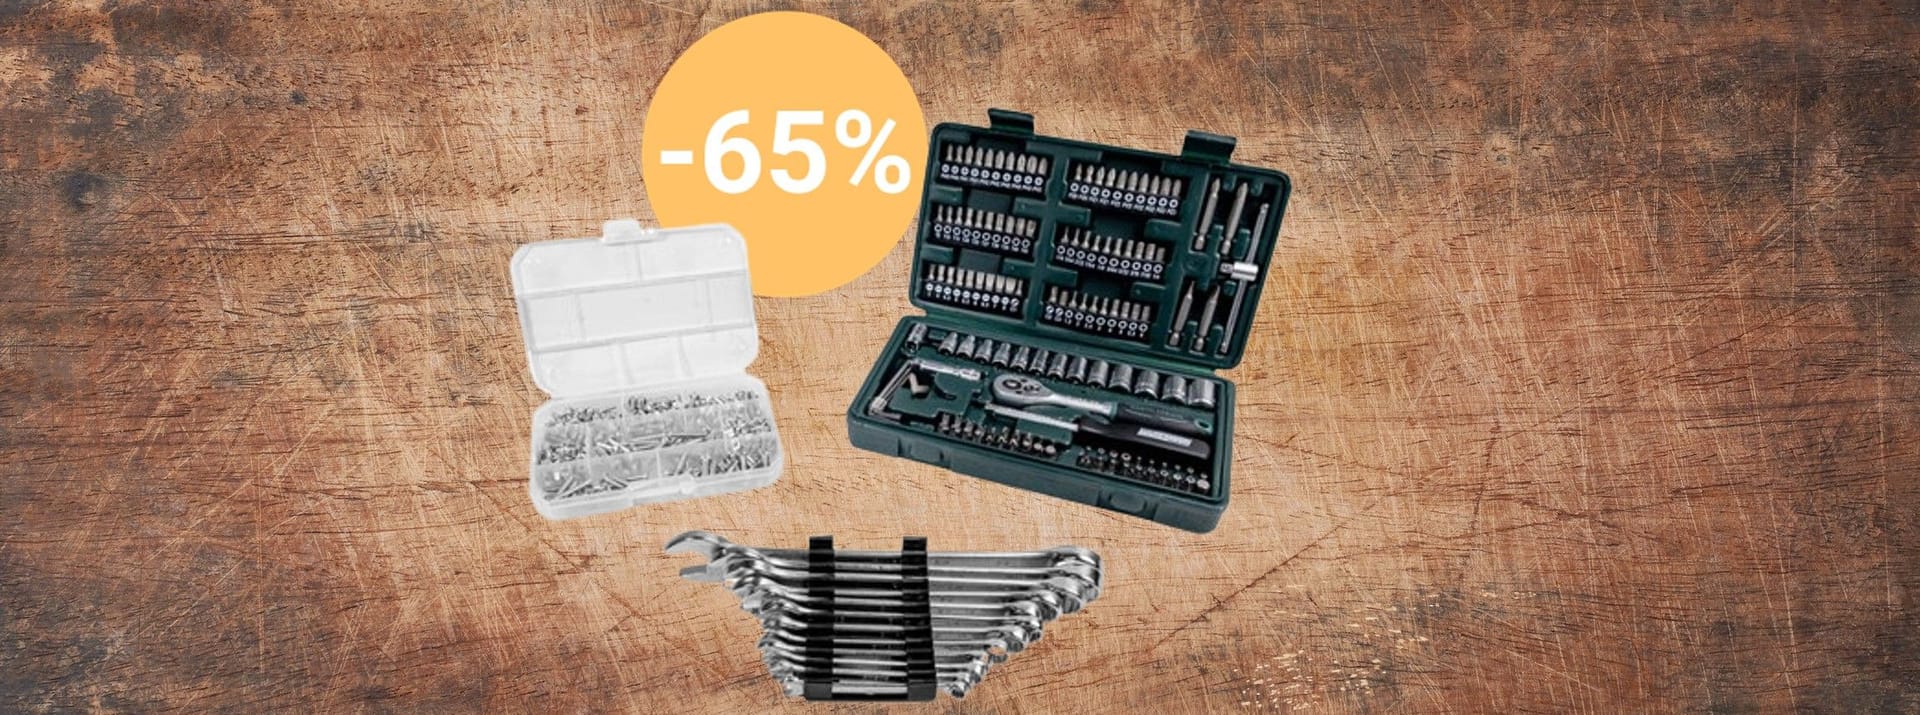 Aldi-Angebot: Der Discounter reduziert ein riesiges Werkzeugset von Brüder Mannesmann über 60 Prozent.